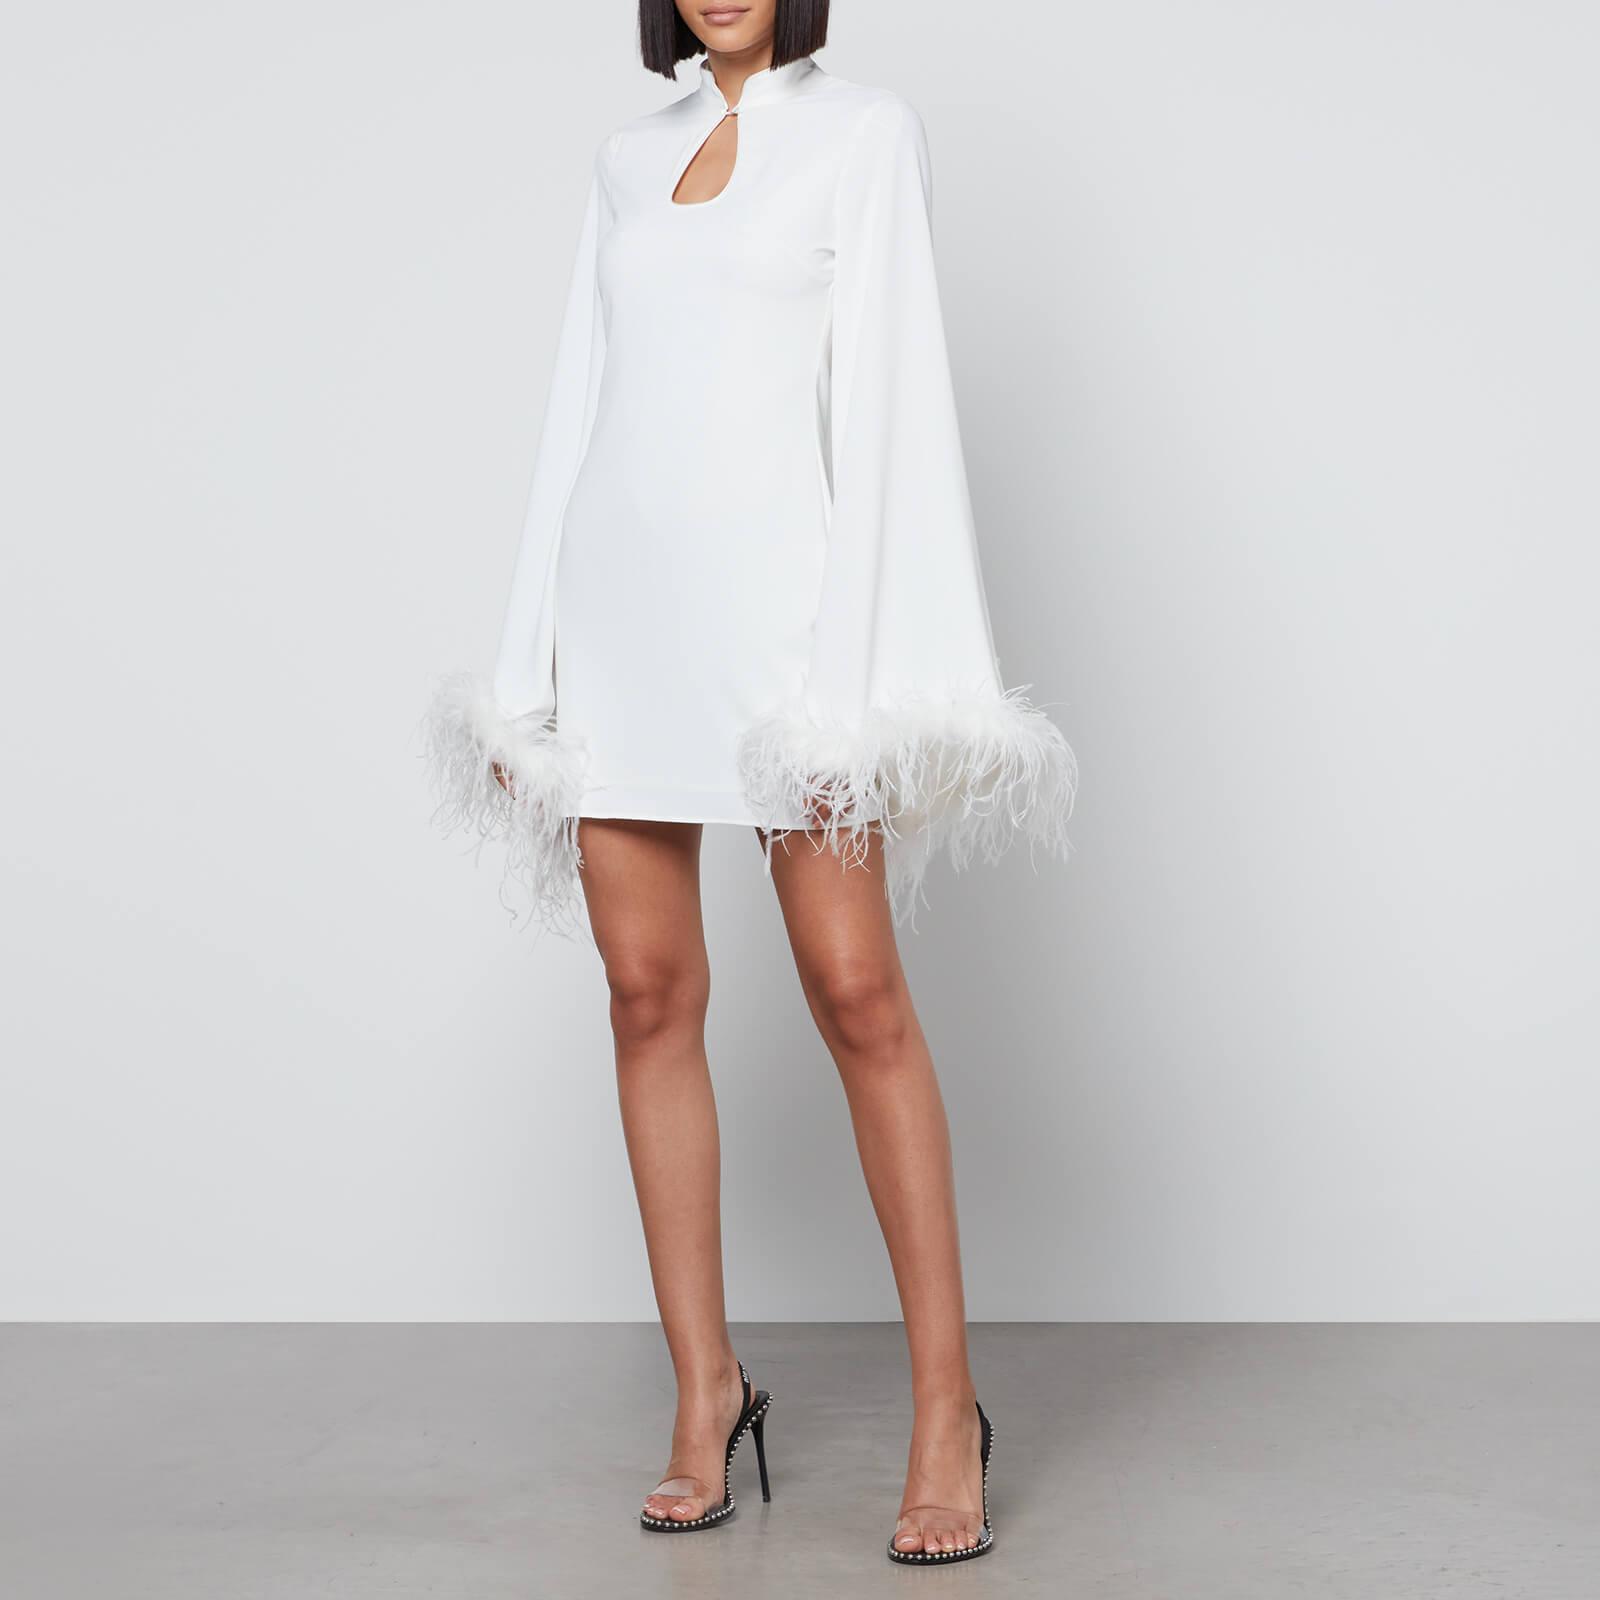 Double Take Fringe + Feather Mini Dress - White M / White